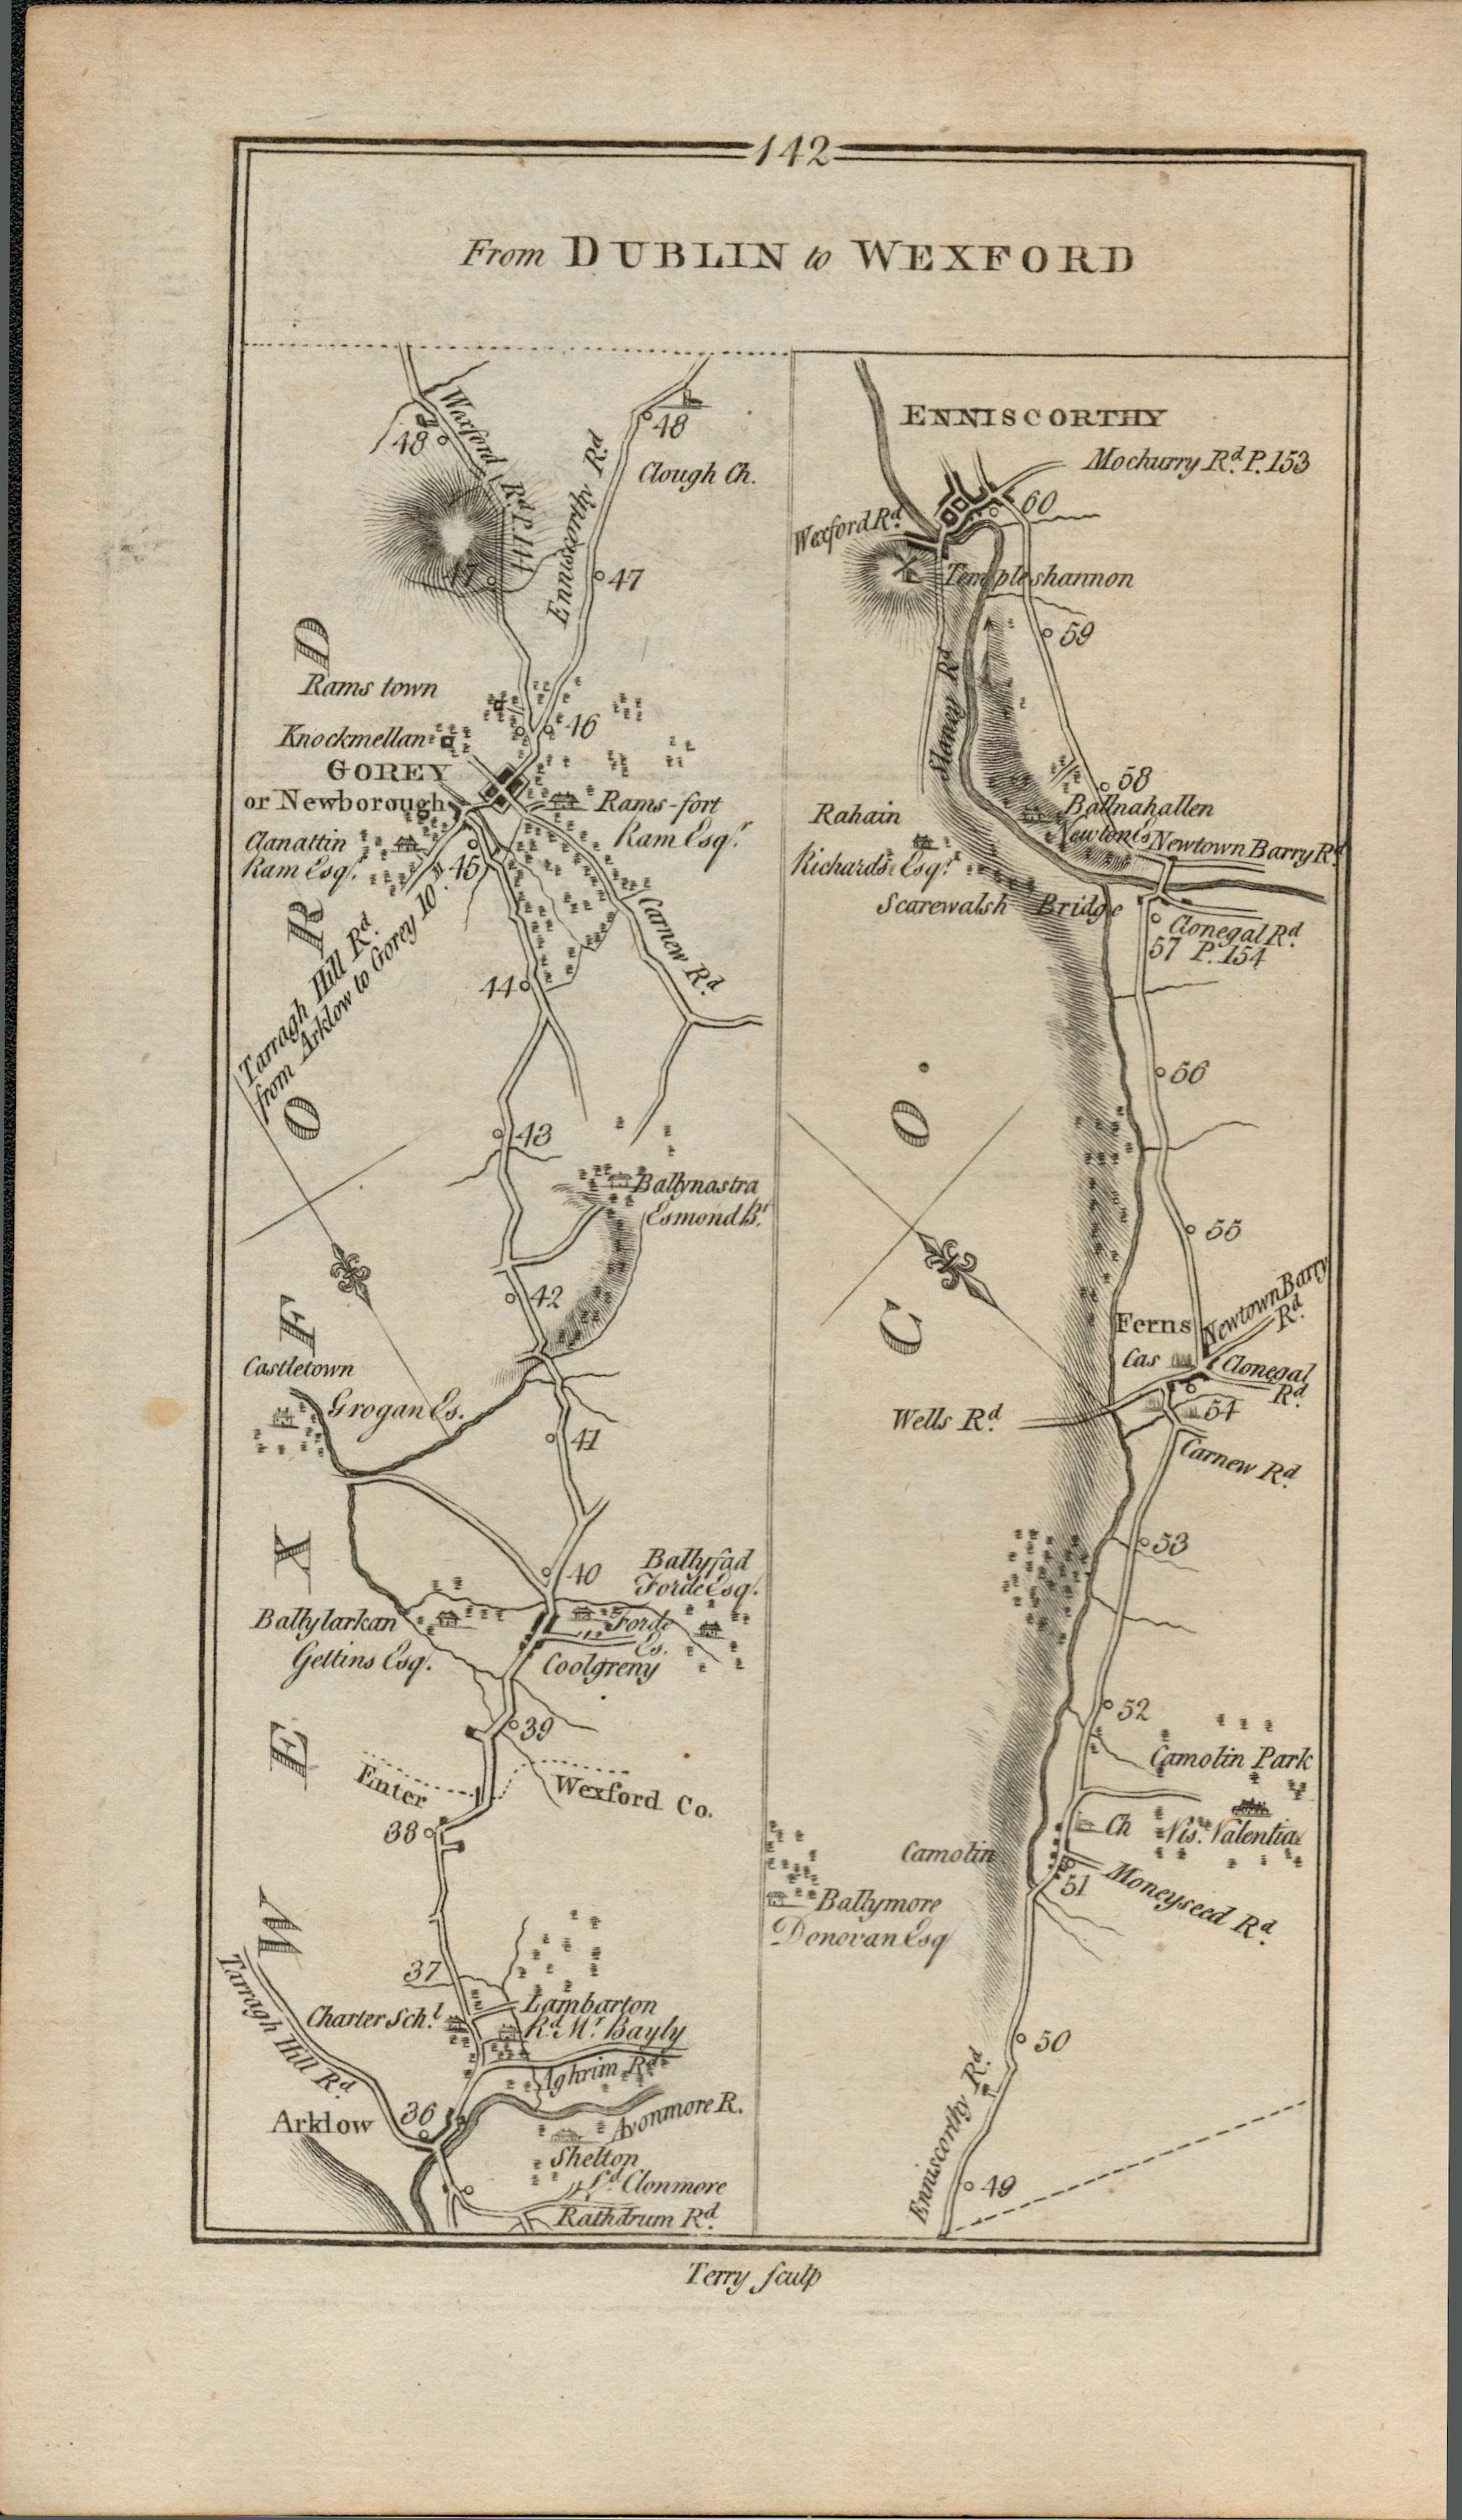 Taylor & Skinner 1777 Ireland Map Wicklow Arklow Brittas Bay Wexford Enniscorthy.